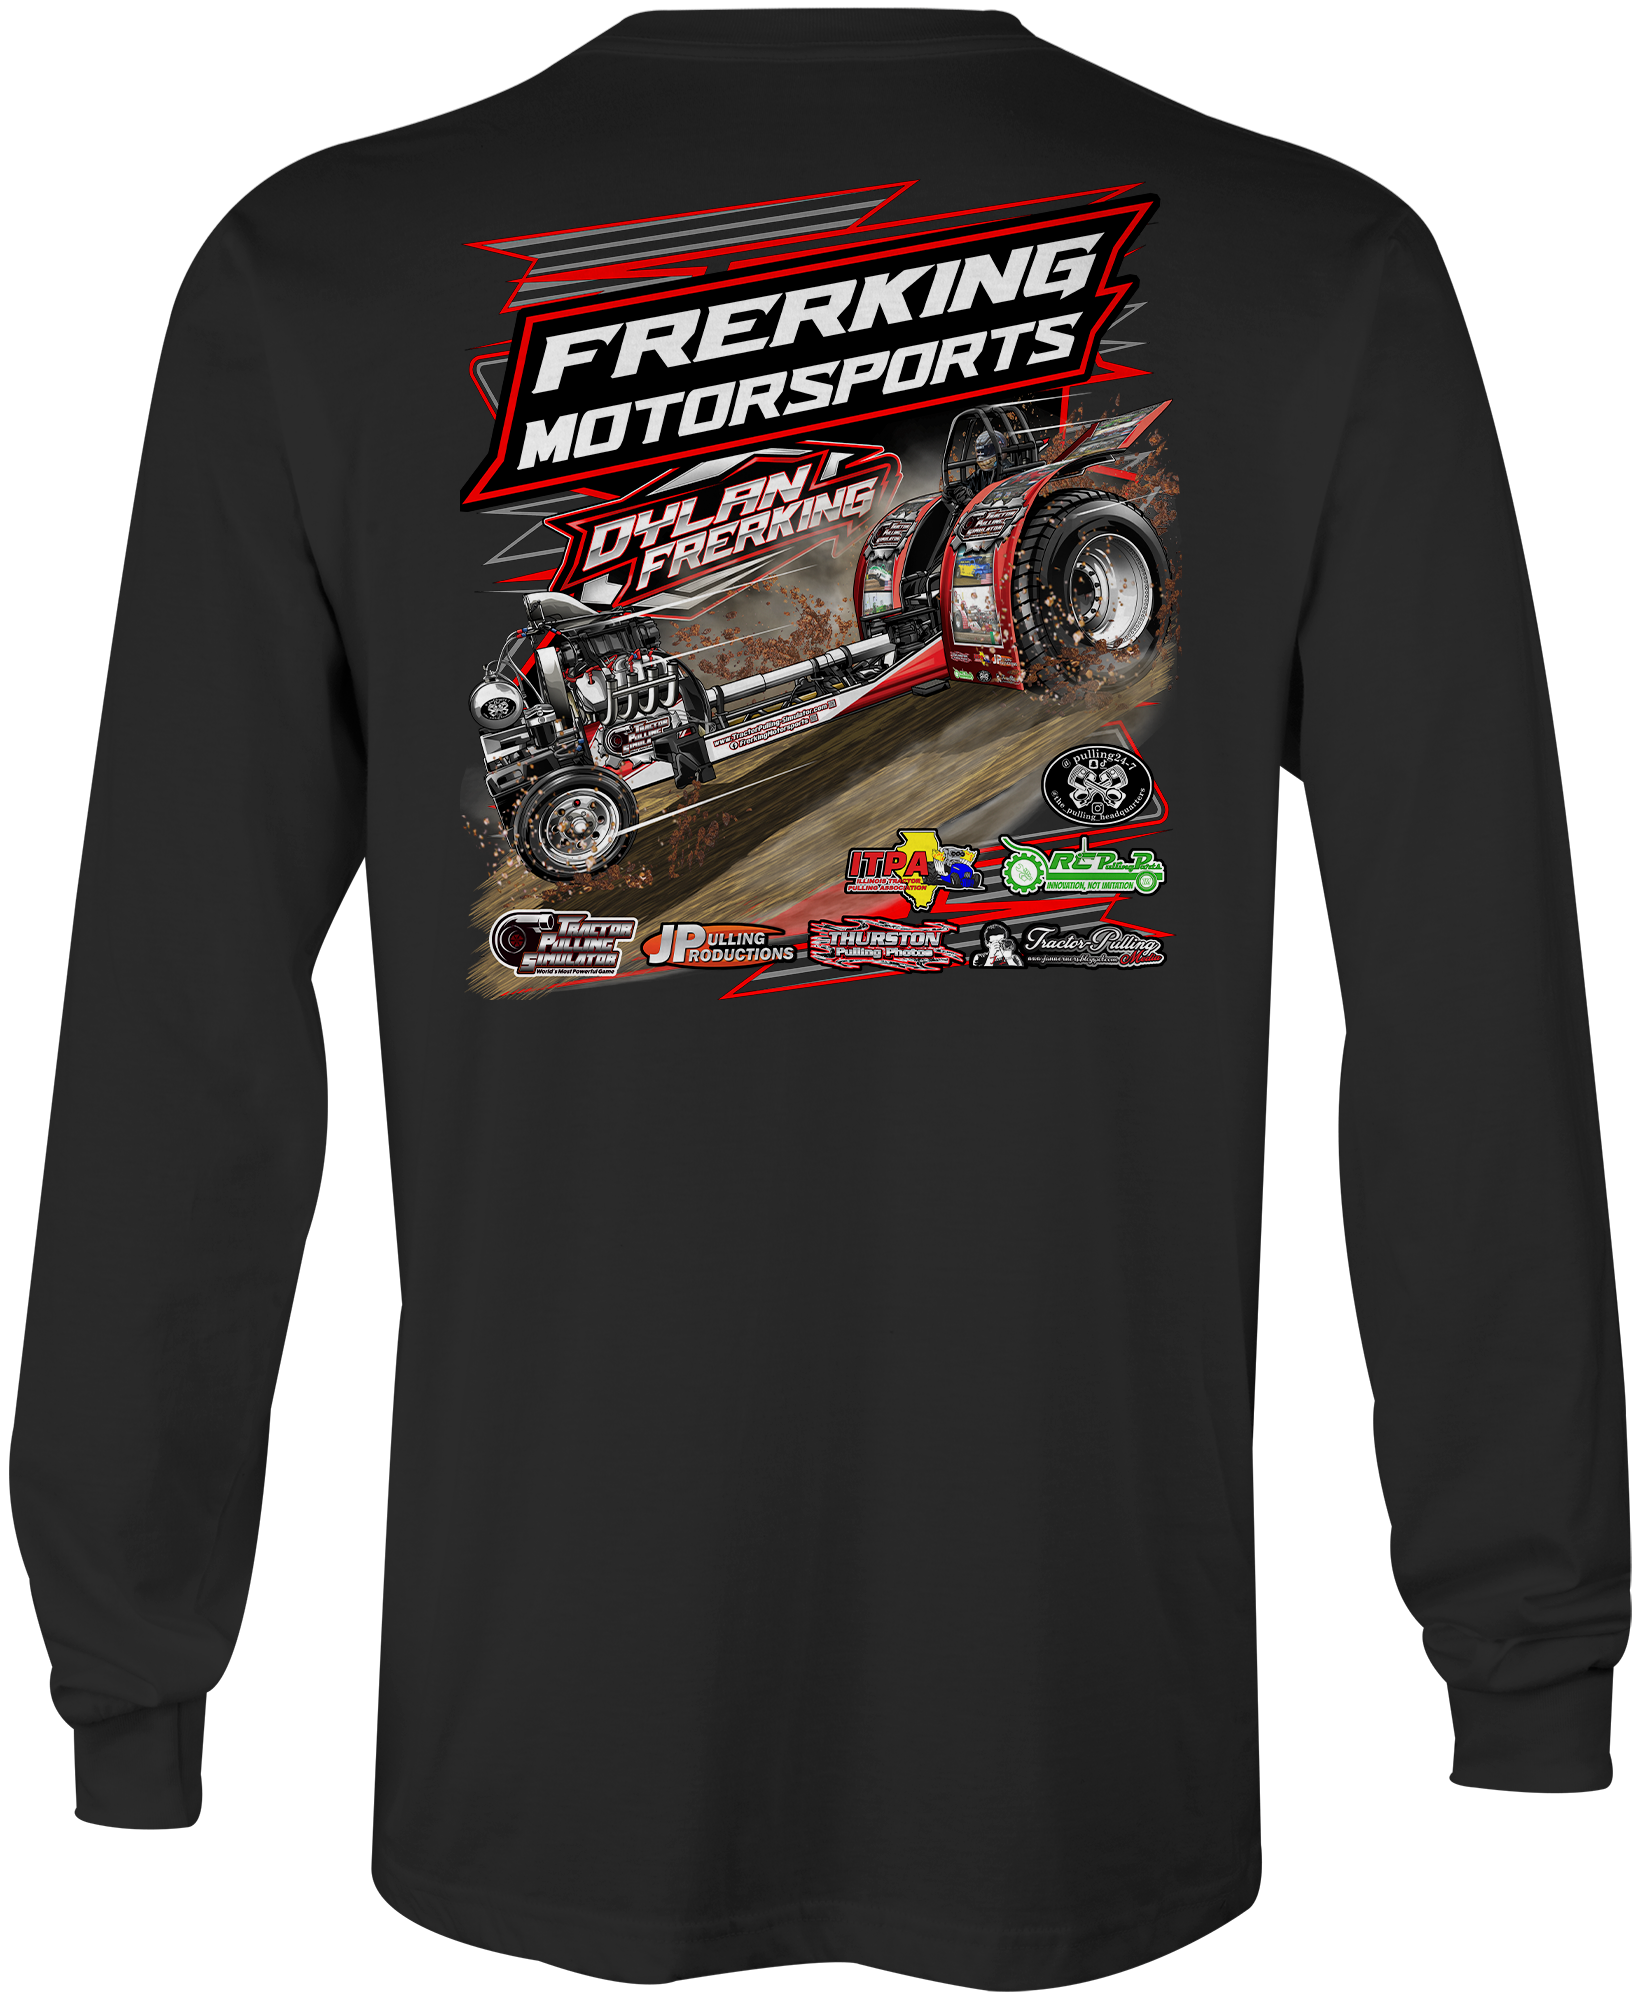 Frerking Motorsports Long Sleeves